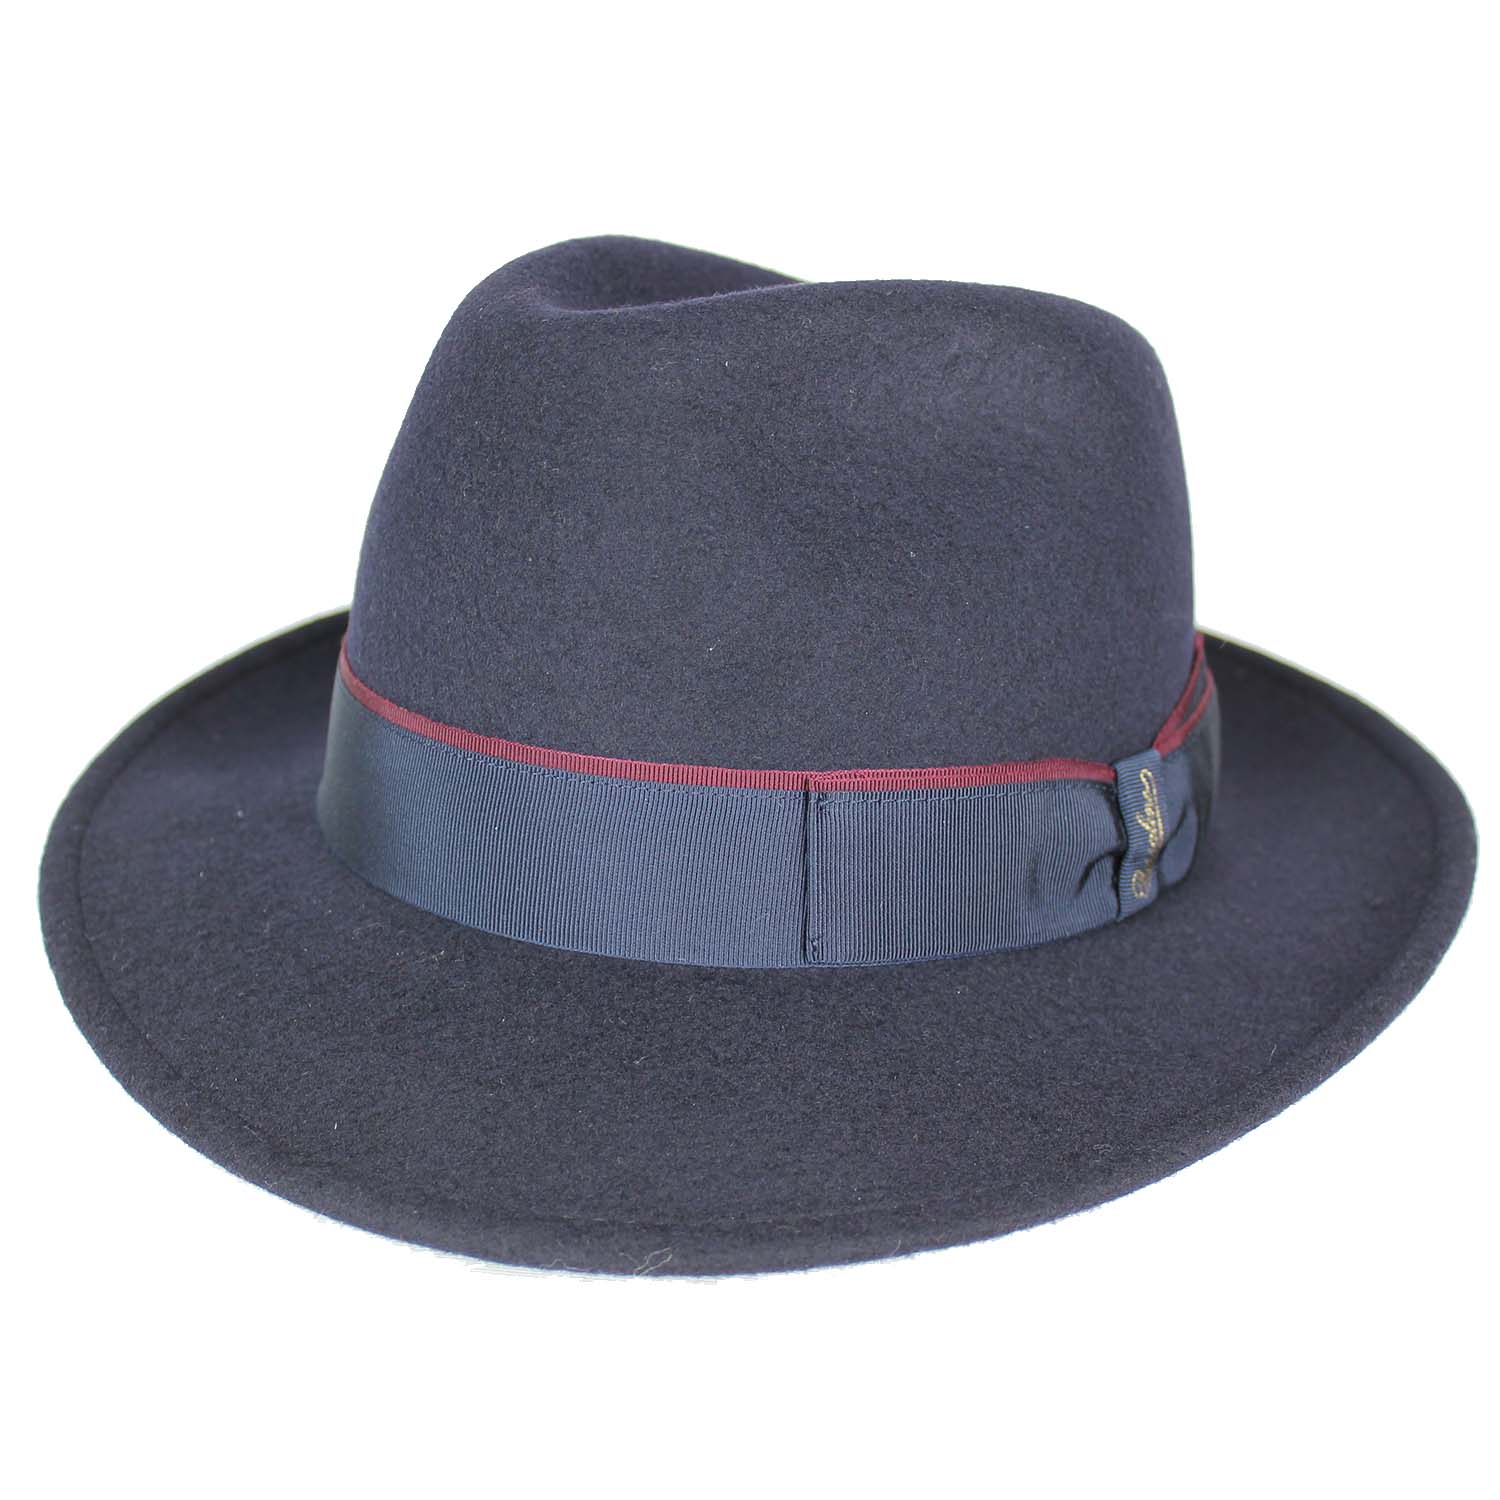 cappello-marchio-borsalino-modello-fedora-a-falda-media-colore-blu